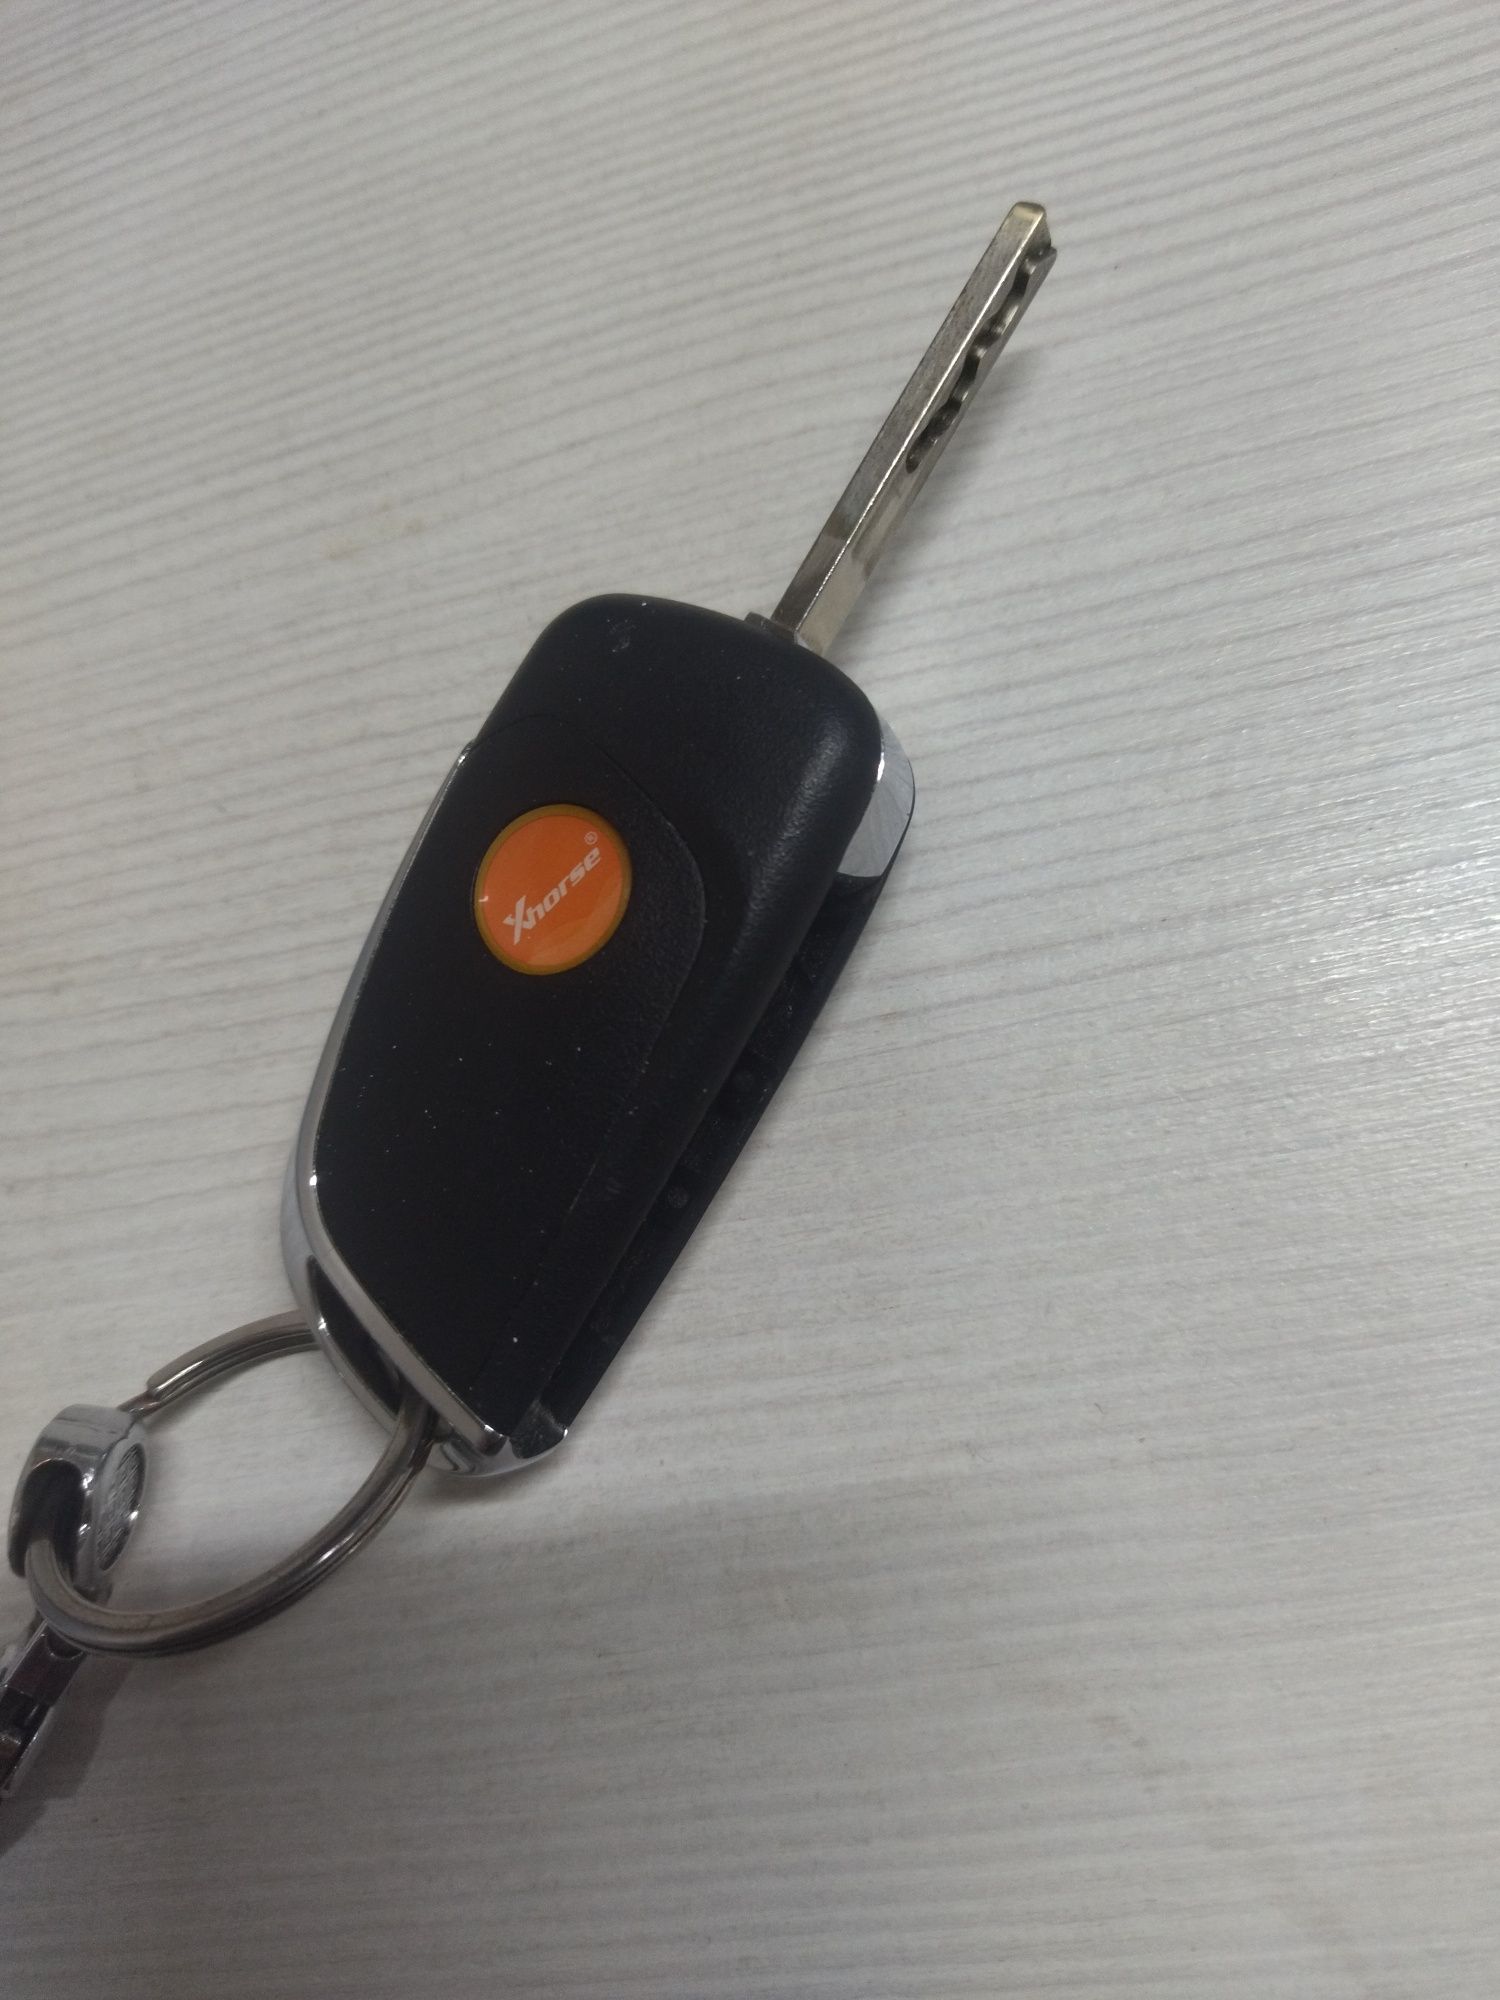 Ключи от авто,марка машины Шевроле Кобальт 2021 г.в